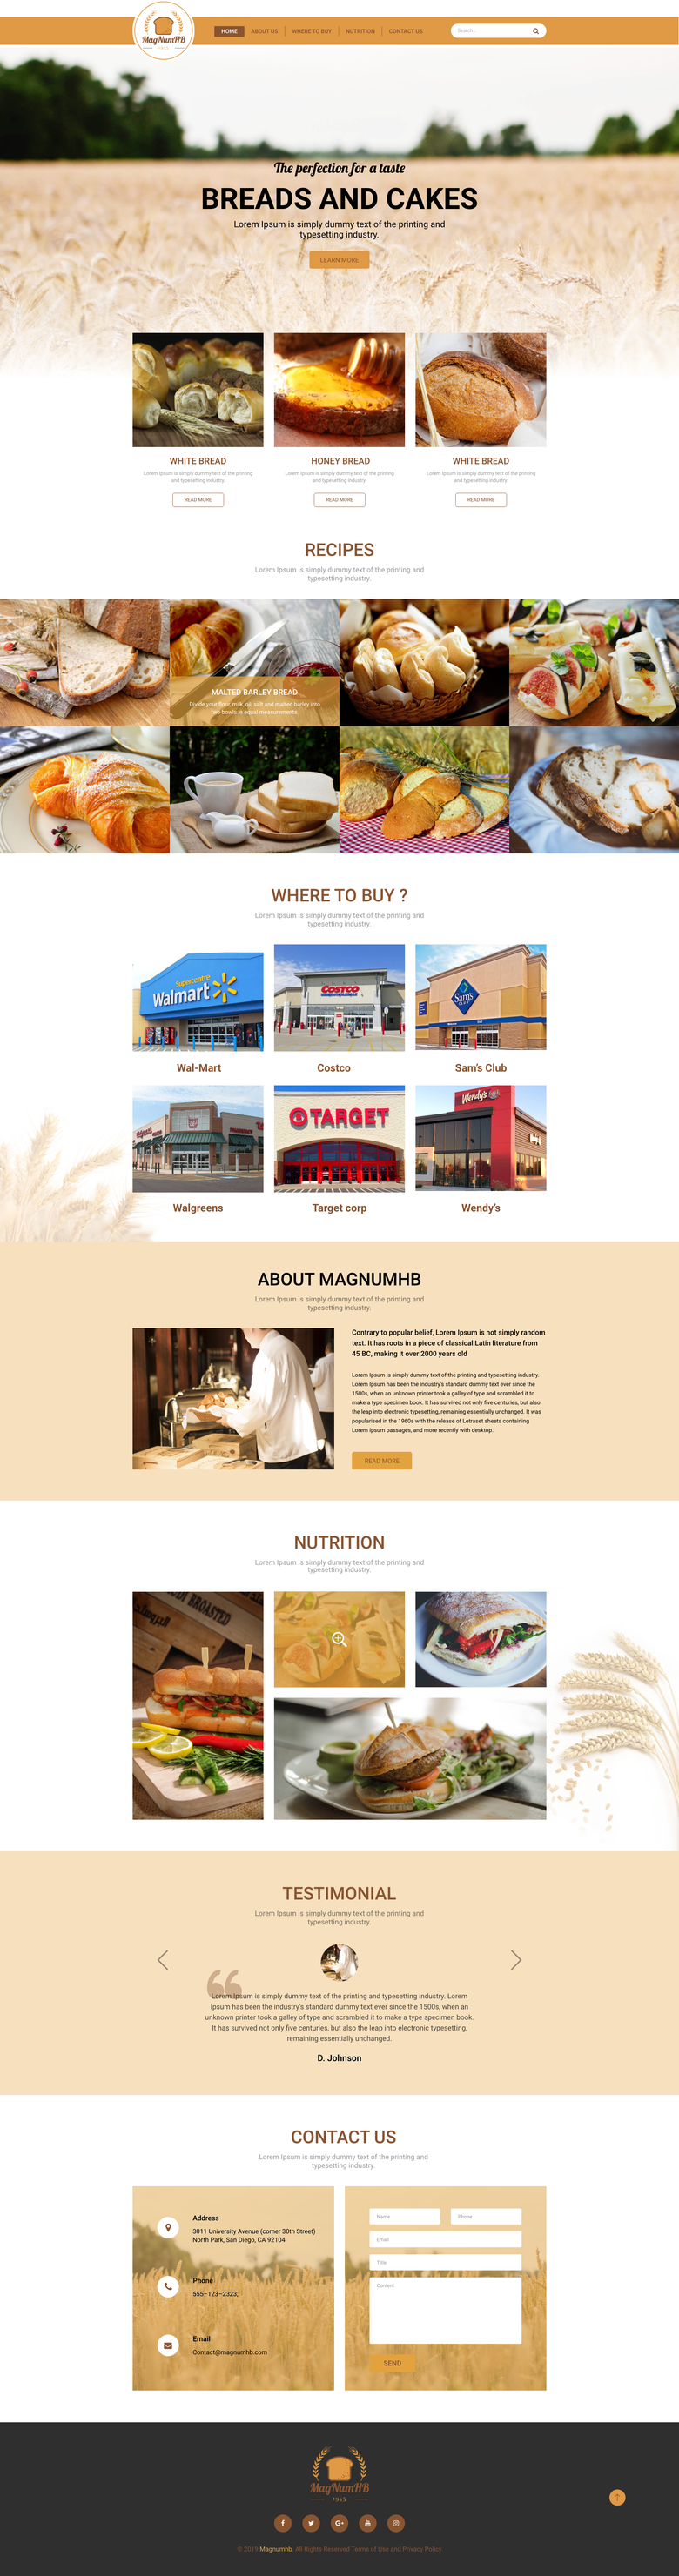 Bread Company homepage design